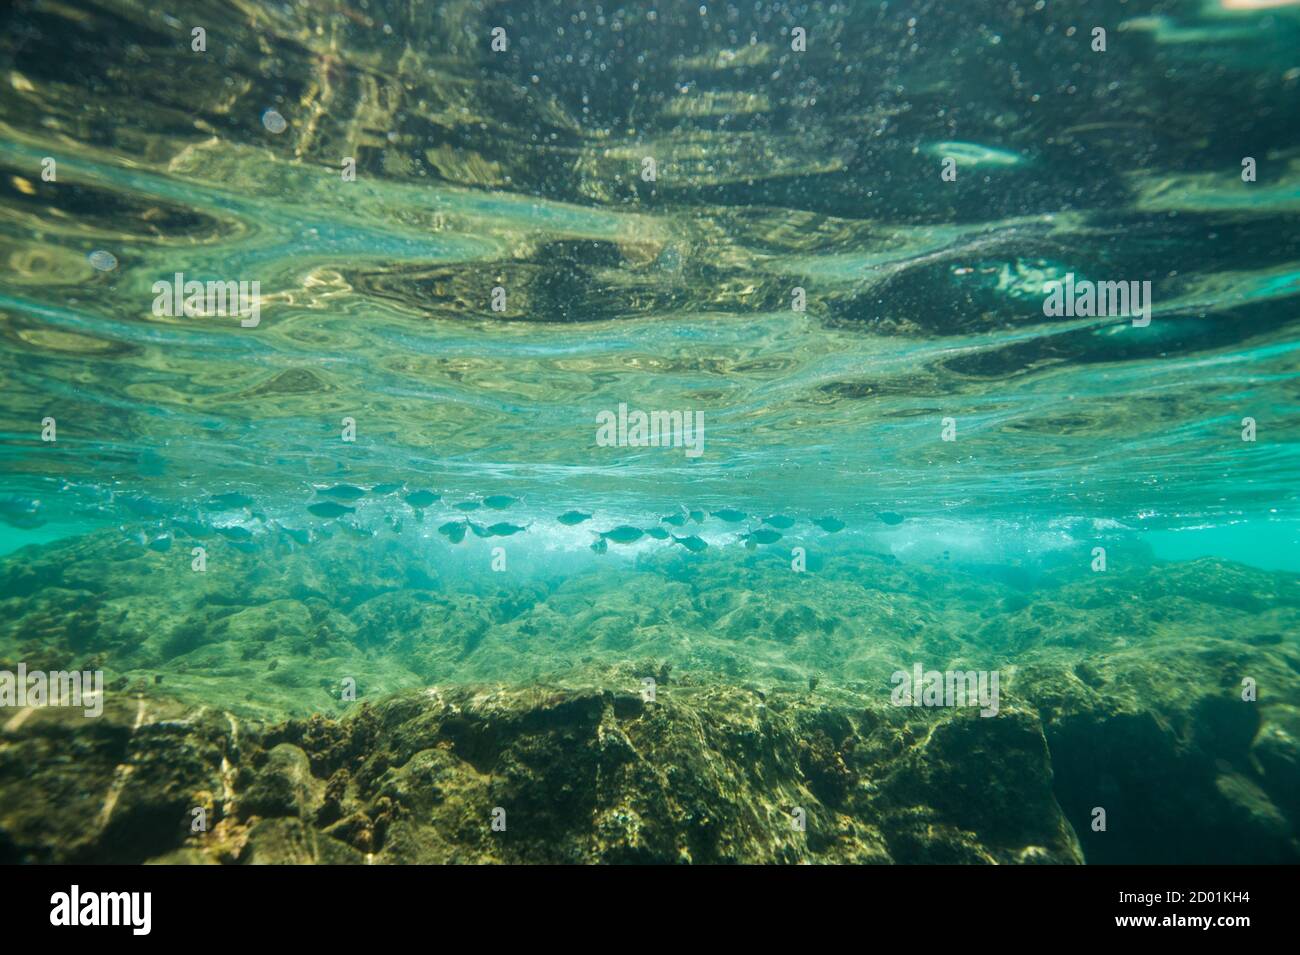 Fishes underwater Stock Photo